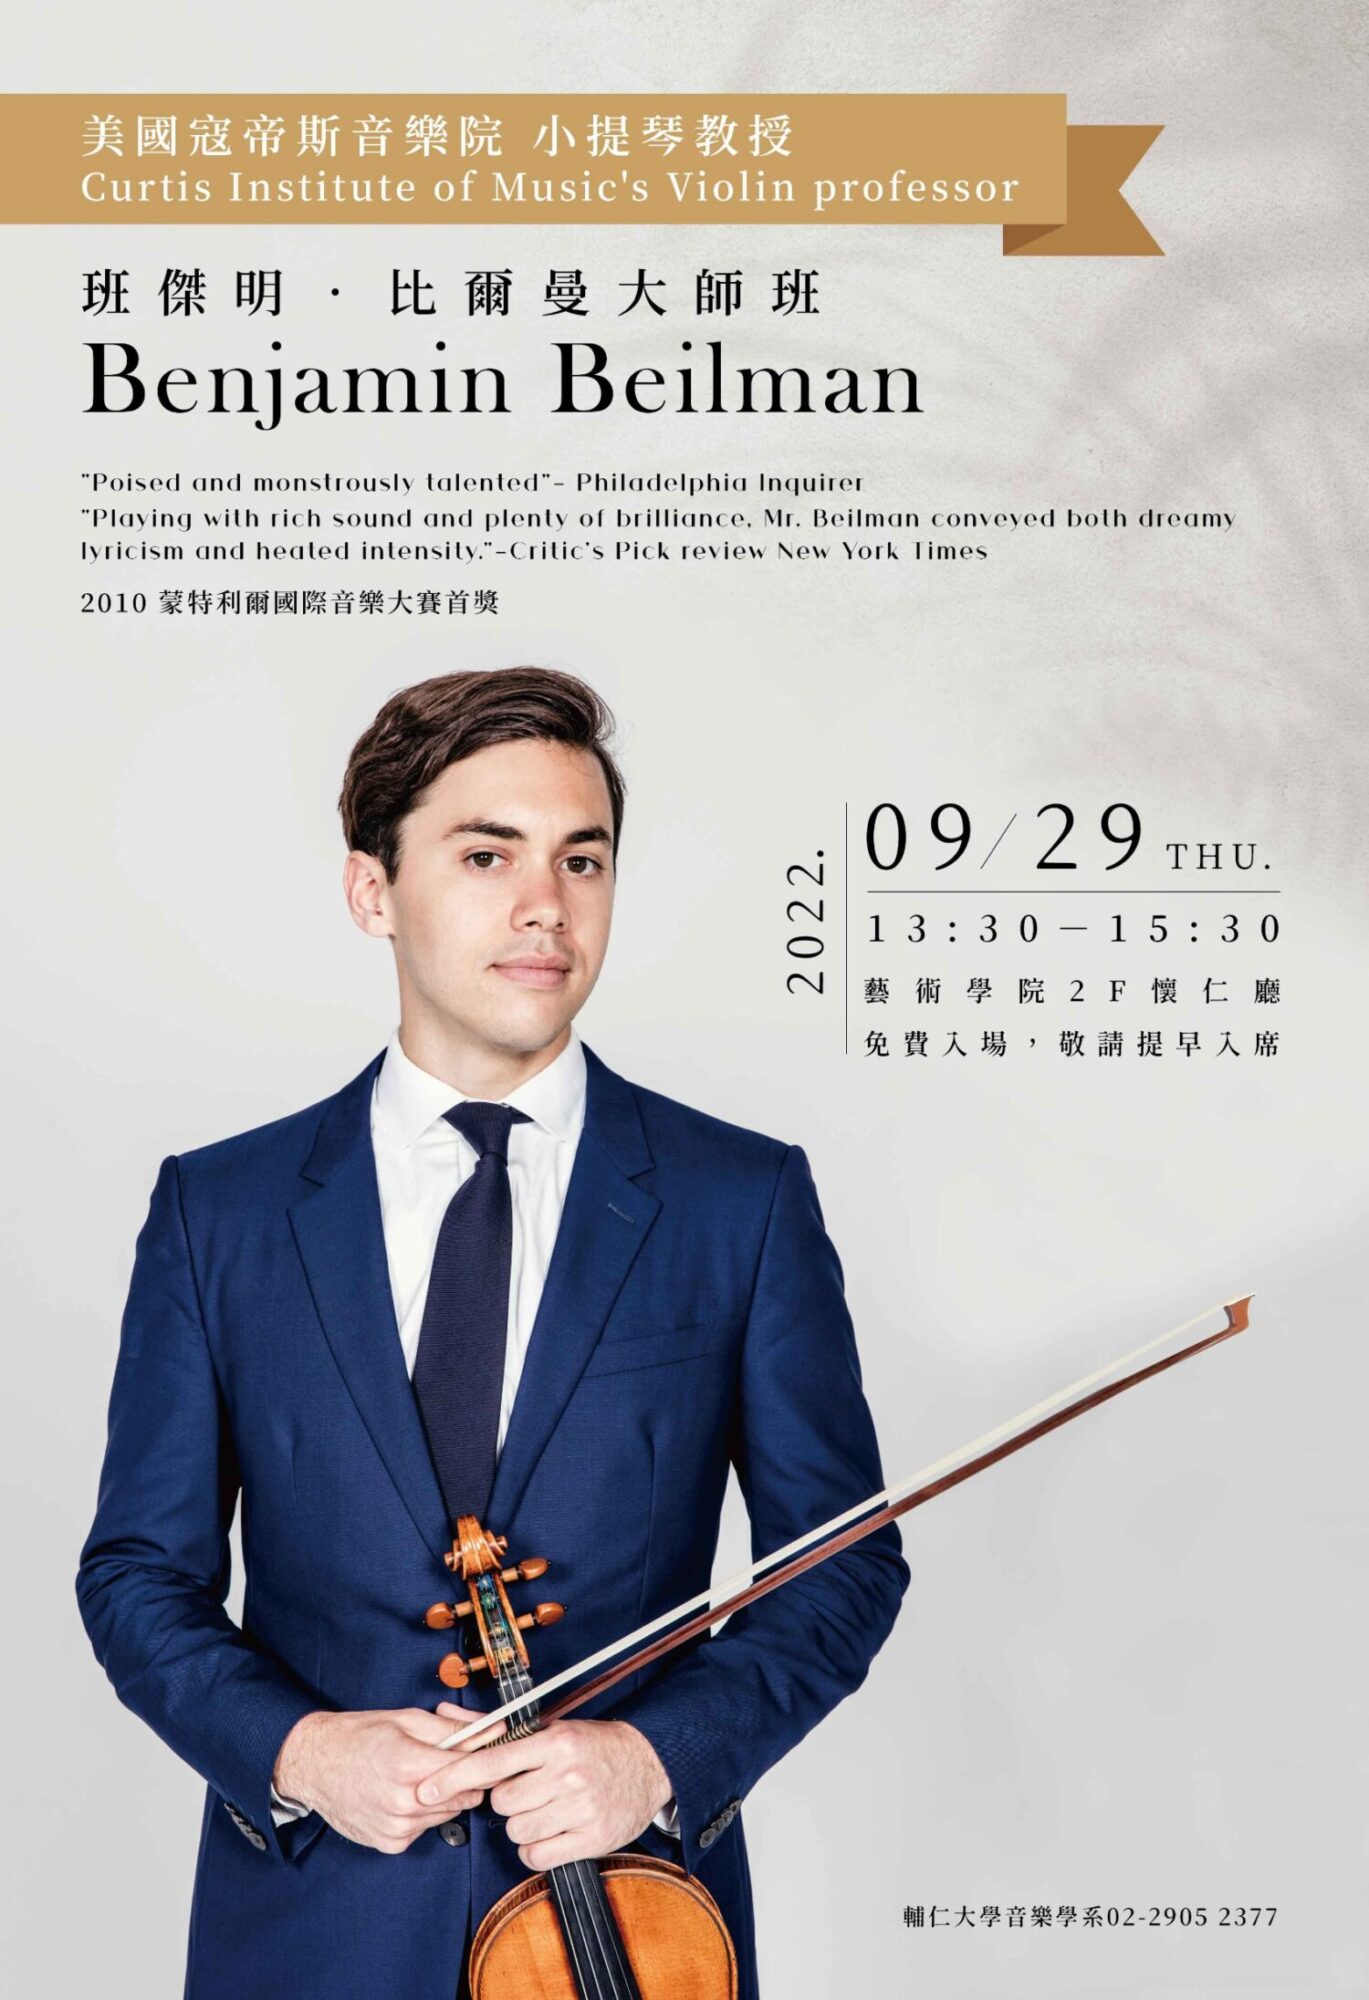 《活動》2022.9.29 費城寇帝斯音樂院小提琴教授-Benjamin Beilman小提琴大師班